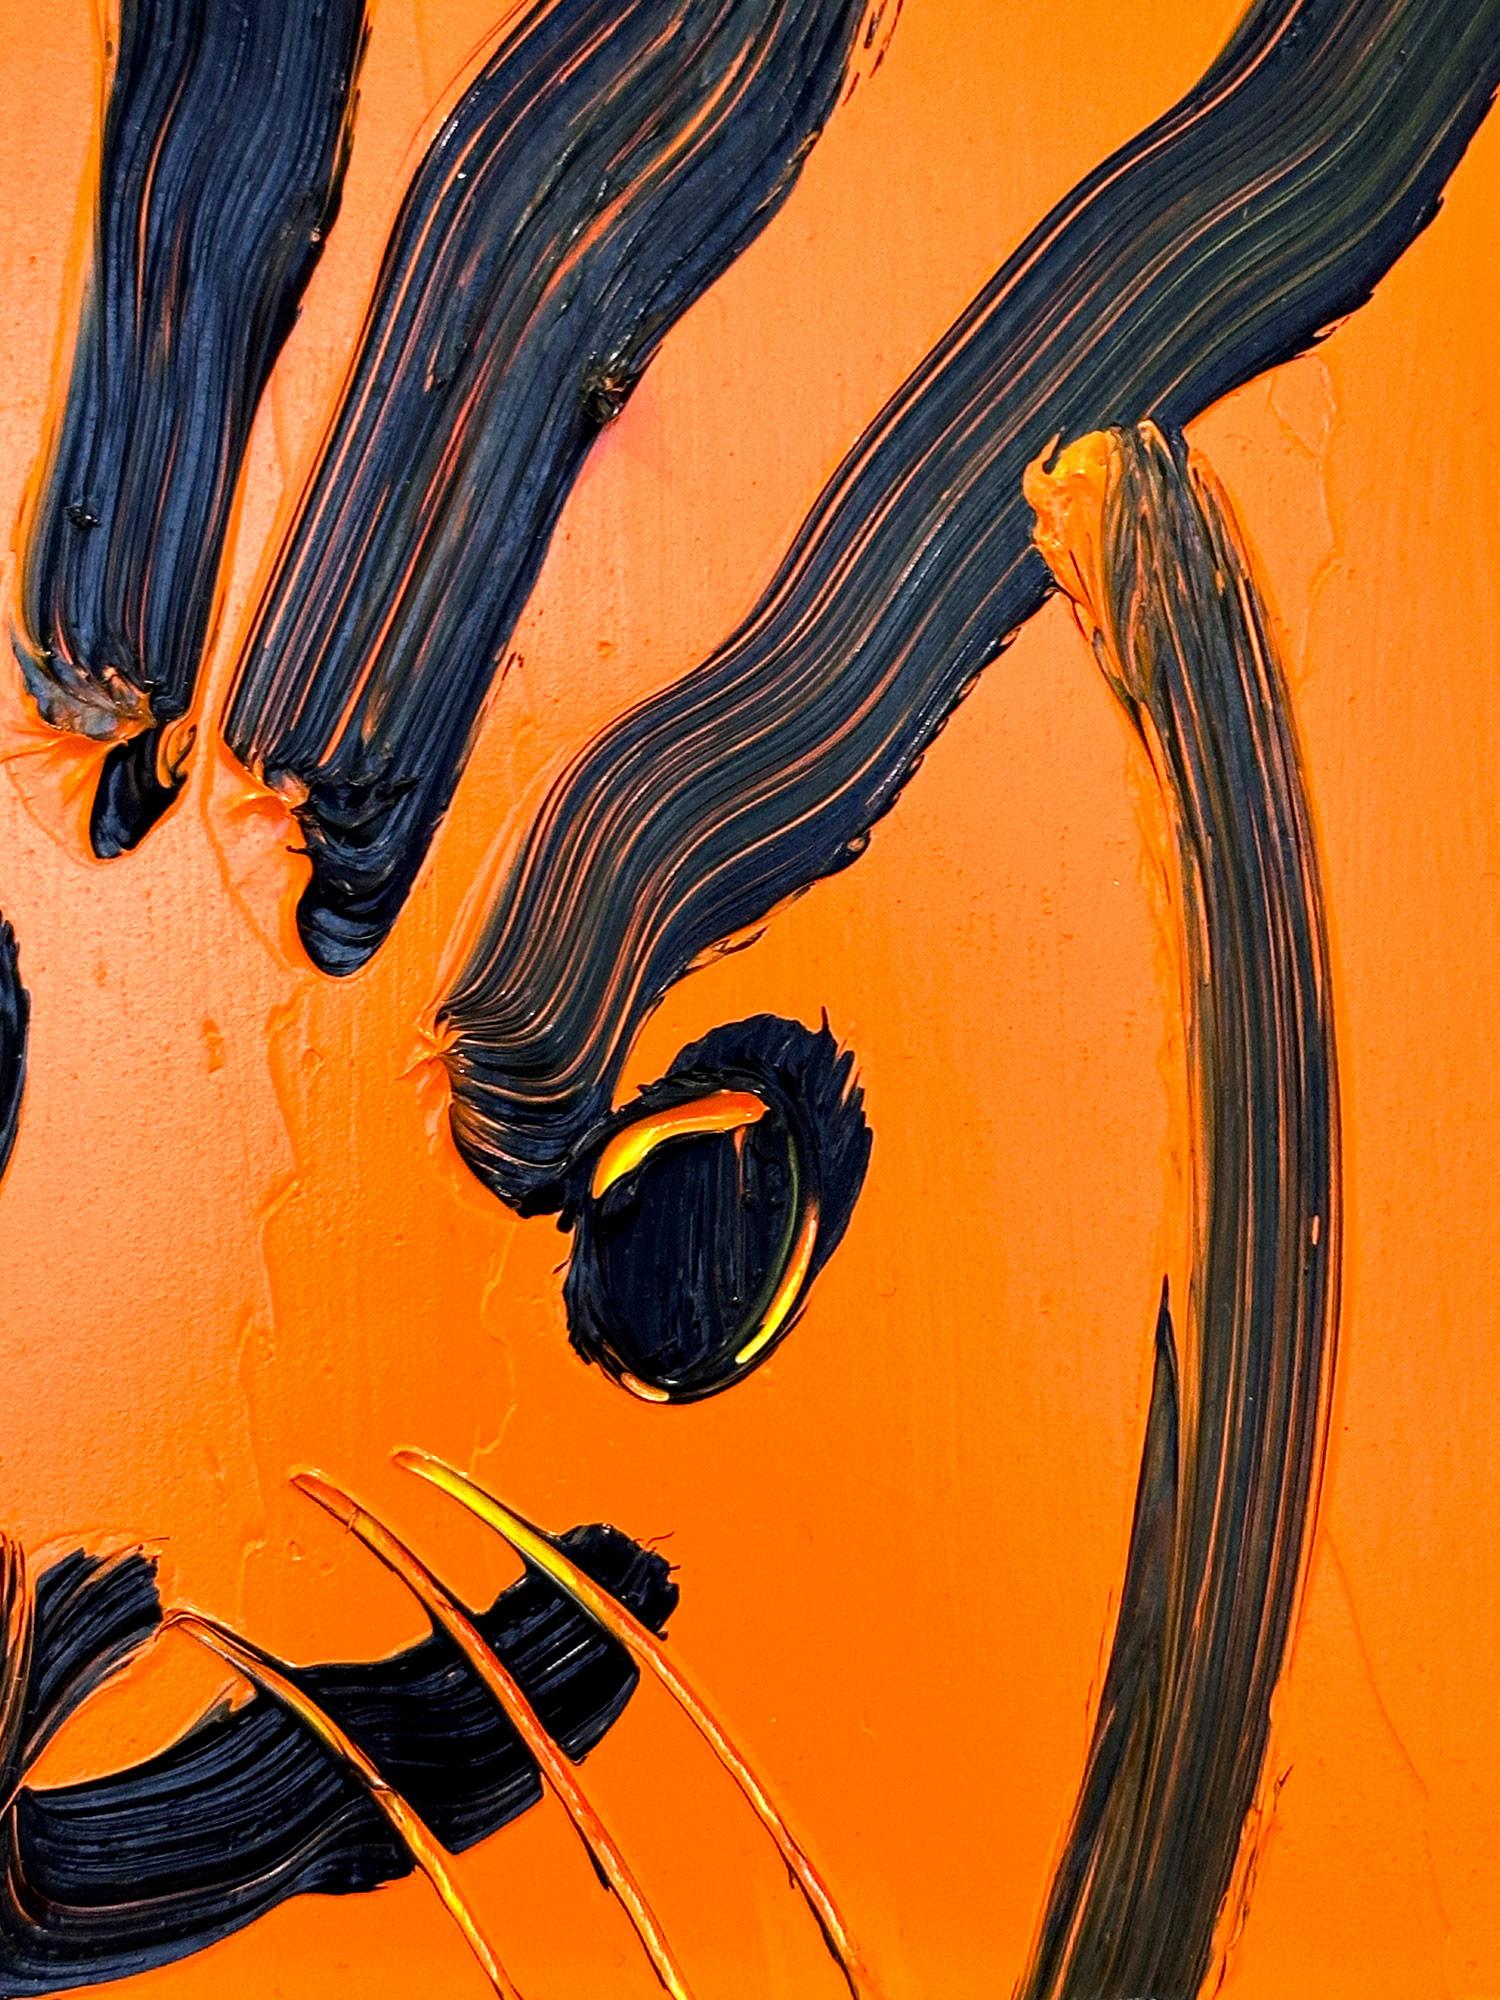 Eine wunderbare Komposition eines der ikonischsten Themen von Slonem, nämlich Hasen. Dieses Werk zeigt eine gestische Figur eines schwarzen Hasen auf einem mandarinenfarbenen Hintergrund mit dick aufgetragener Farbe. Es ist in einem wunderschönen